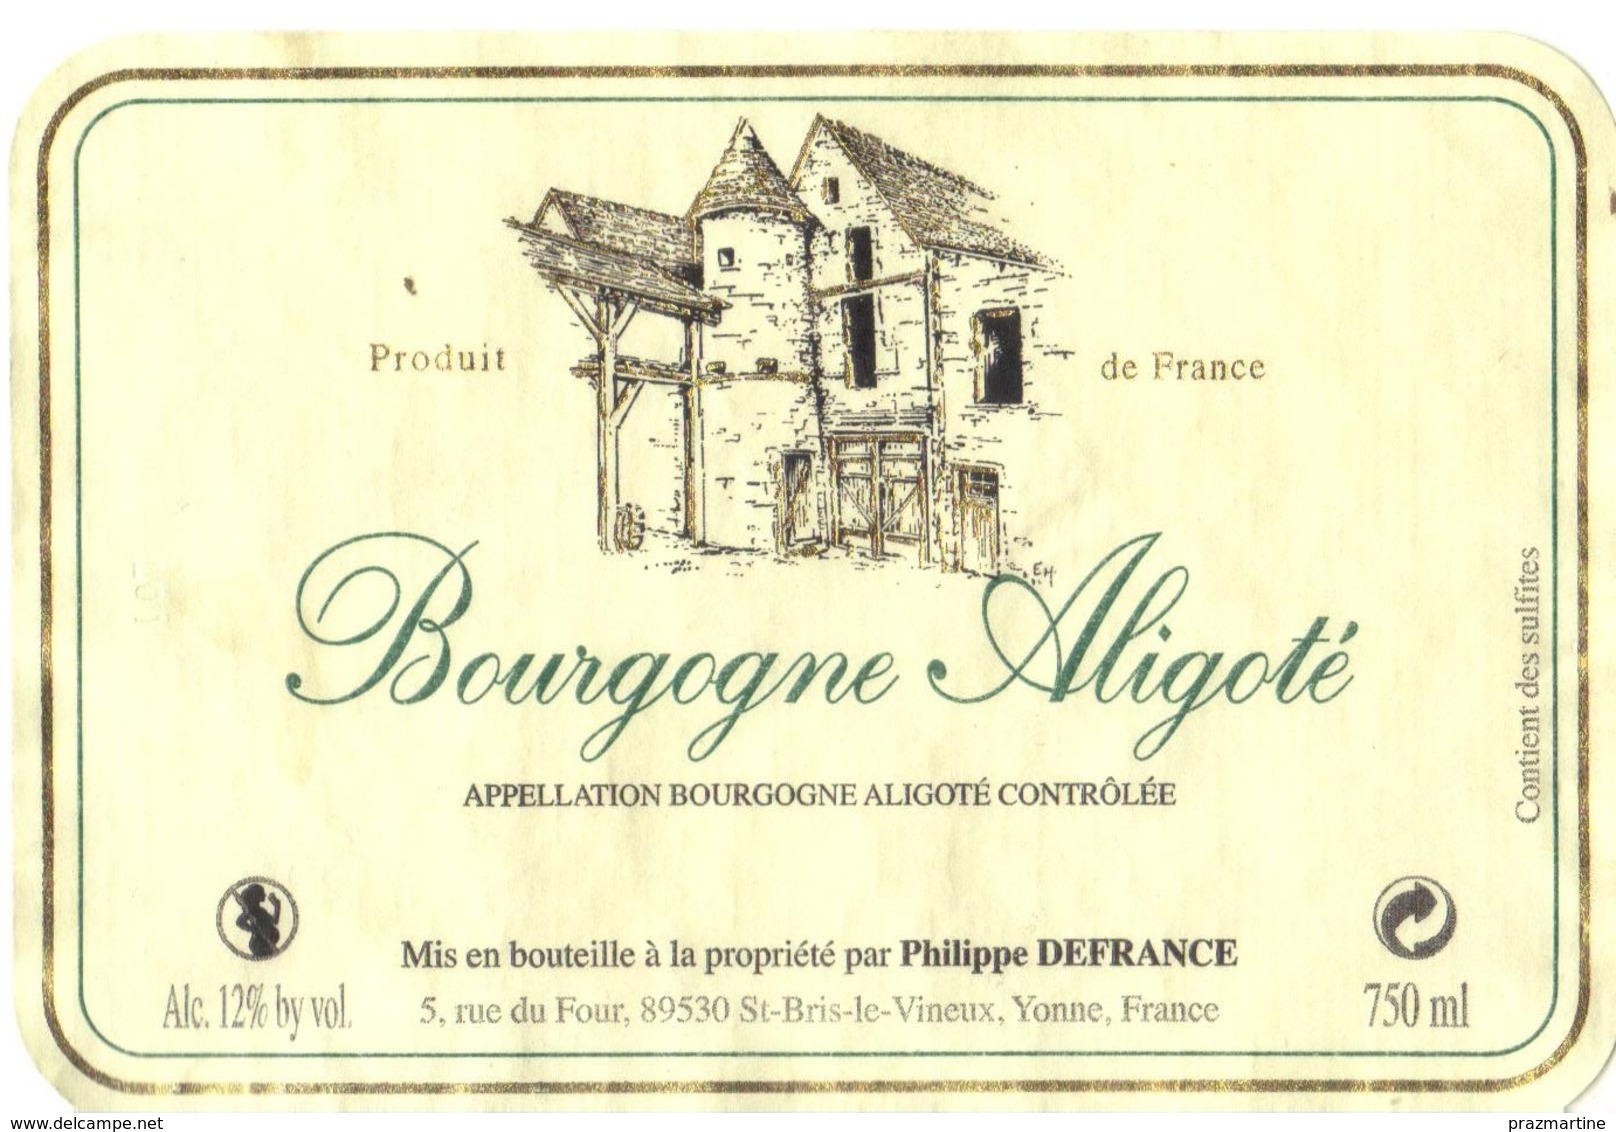 Etiquette De Bourgone Aligoté - DEFRANCE Philippe - St Bris Le Vineux - Yonne - 89 - Bourgogne